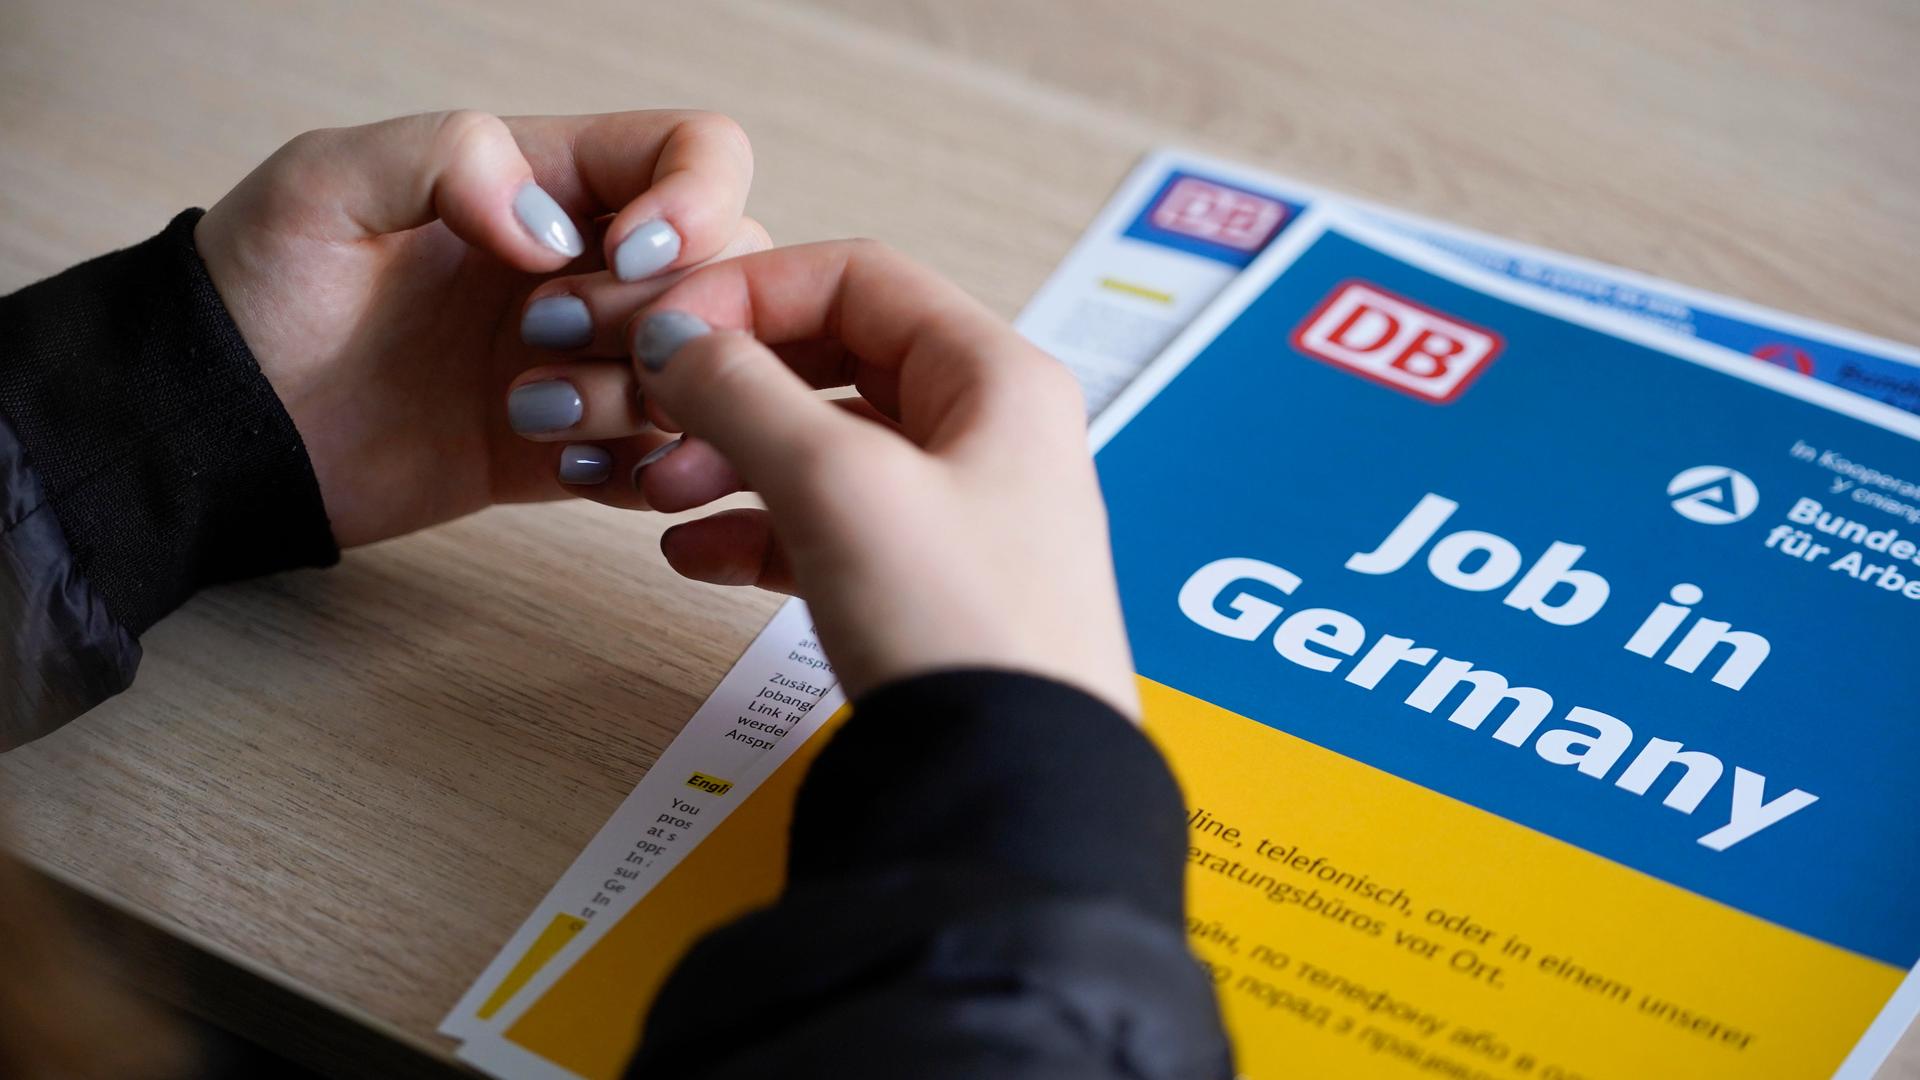 Die Hände einer Frau mit taubenblauem Nagellack liegen auf einem Informationsblatt der Deutschen Bahn, es ist in den ukrainischen Nationalfarben Blau und Gelb gehalten und trägt die Aufschrift "Job in Germany".